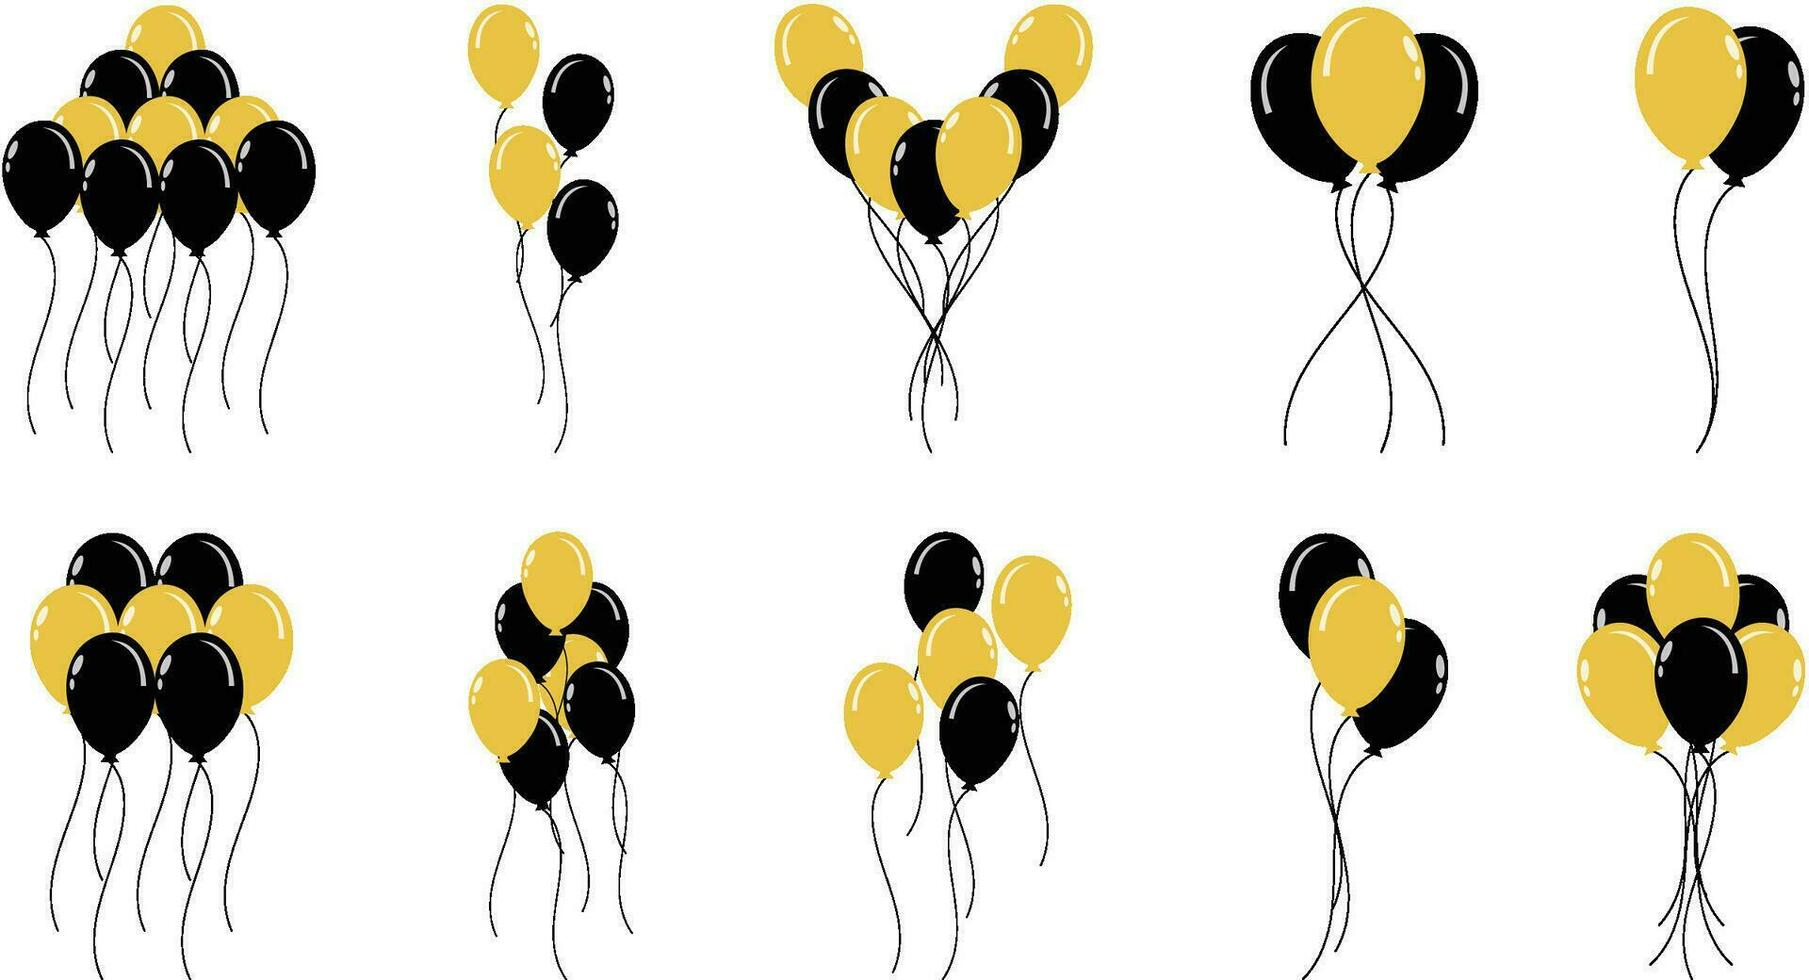 svart fredag, guld fest och födelsedag ballonger uppsättning vektor